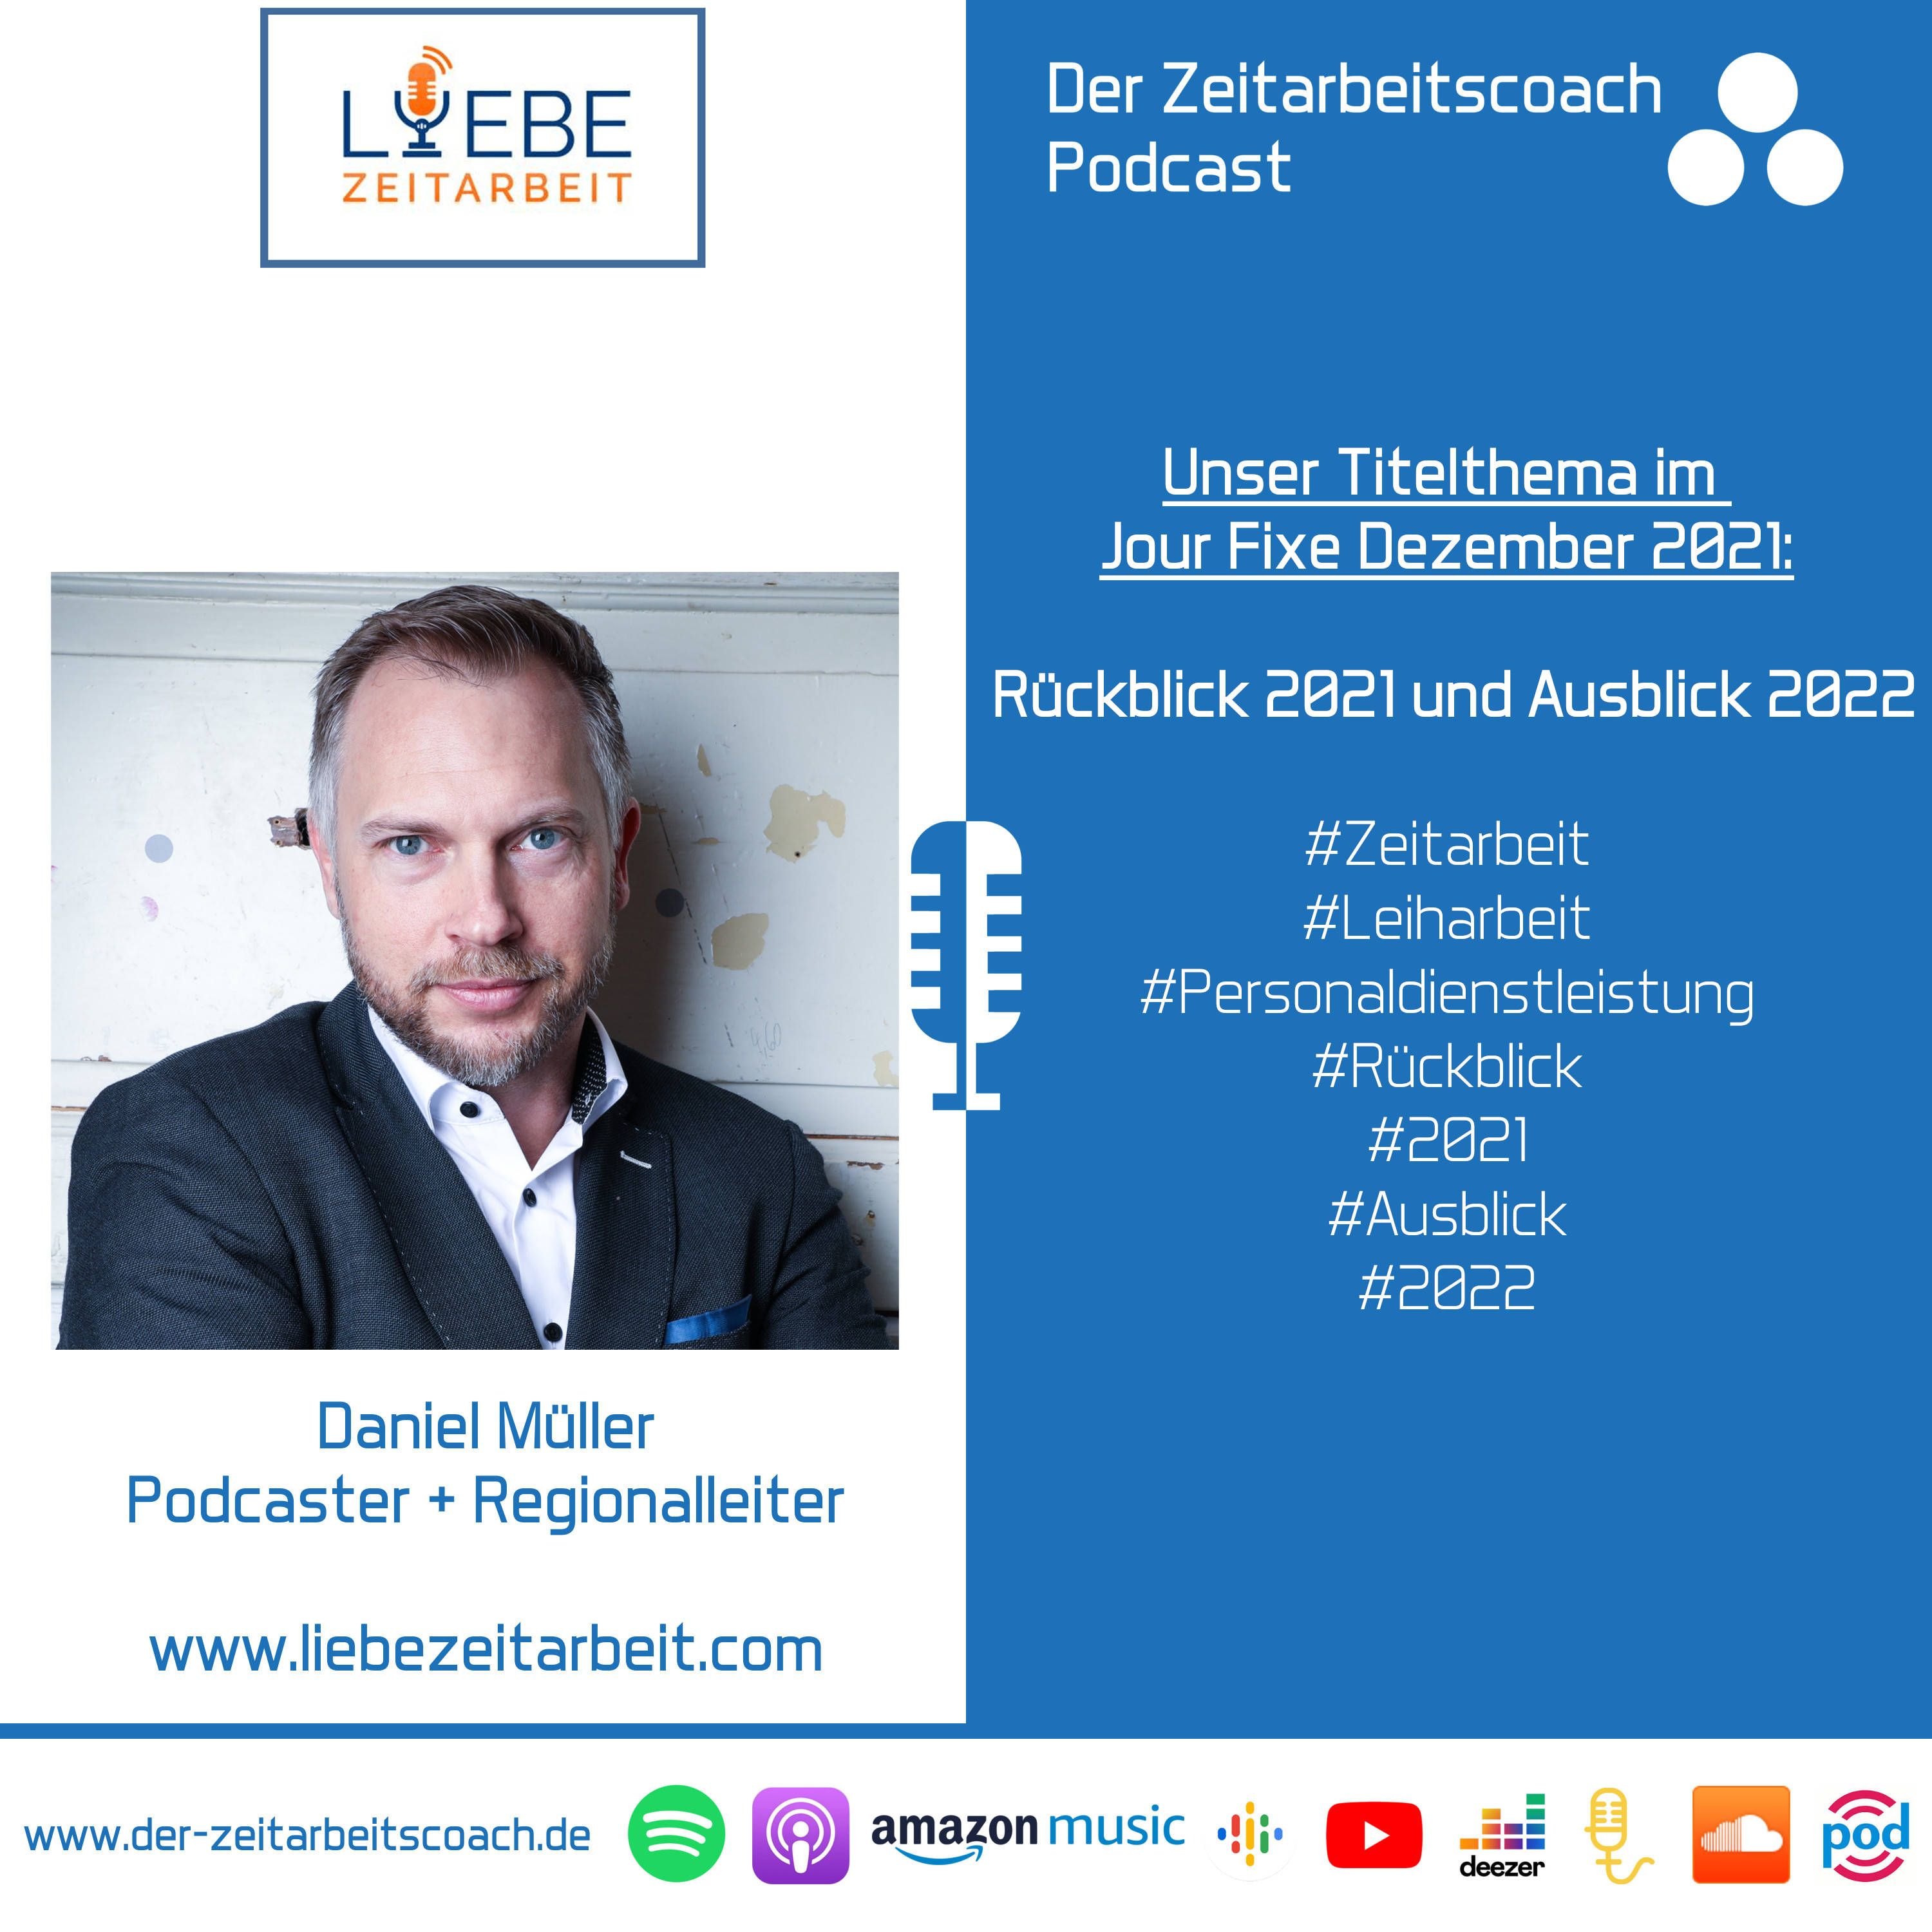 Rückblick 2021 und Ausblick 2022 | Daniel Müller von Liebe Zeitarbeit im Zeitarbeitscoach Podcast